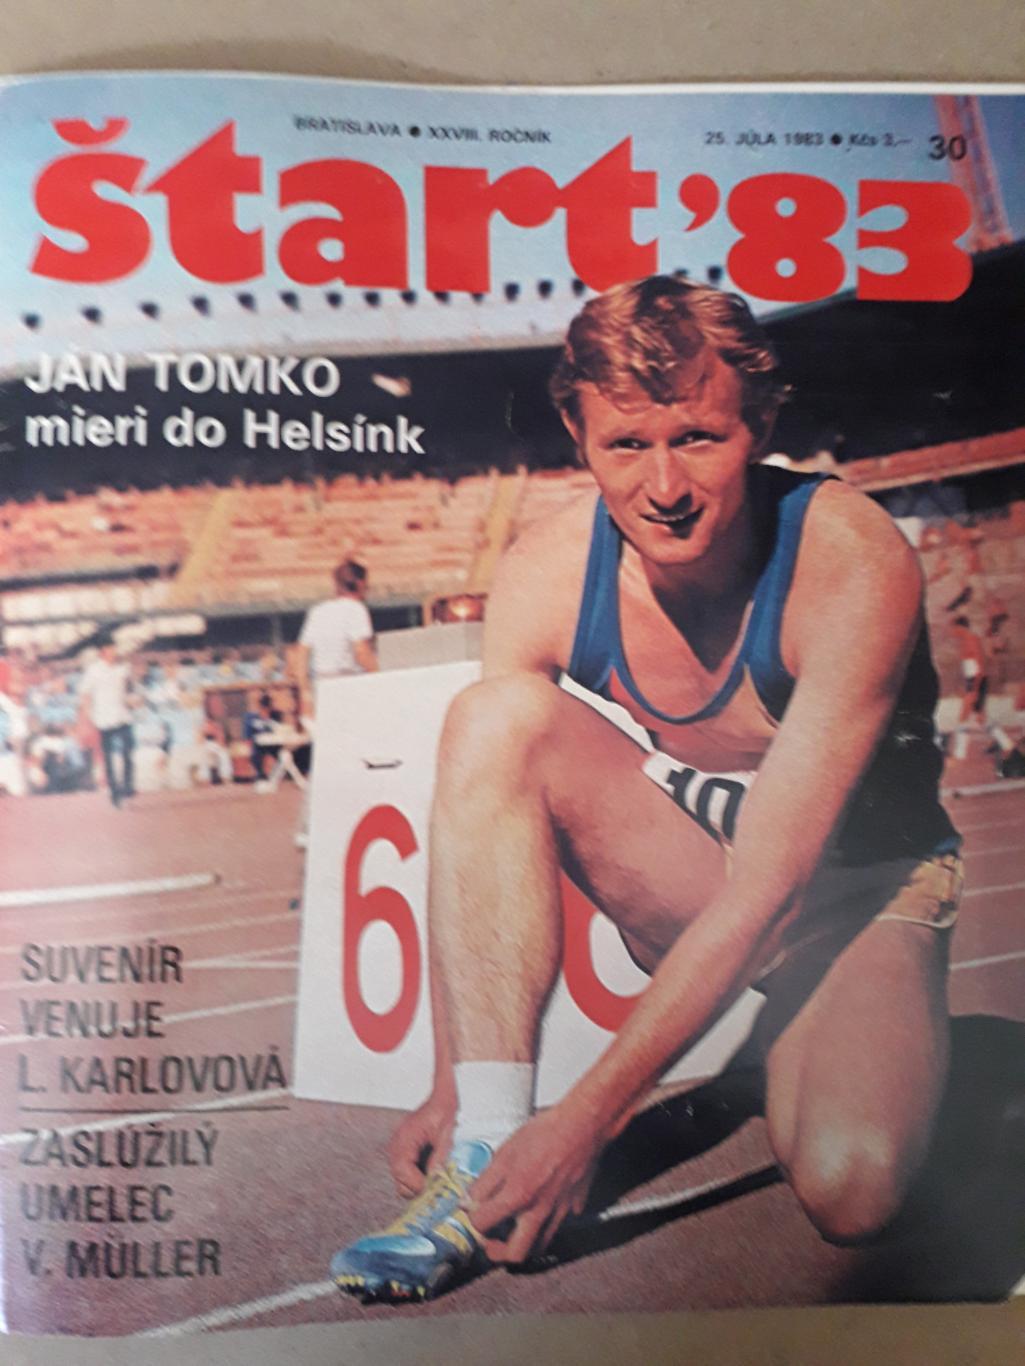 Журнал Start Nr. 30/1983